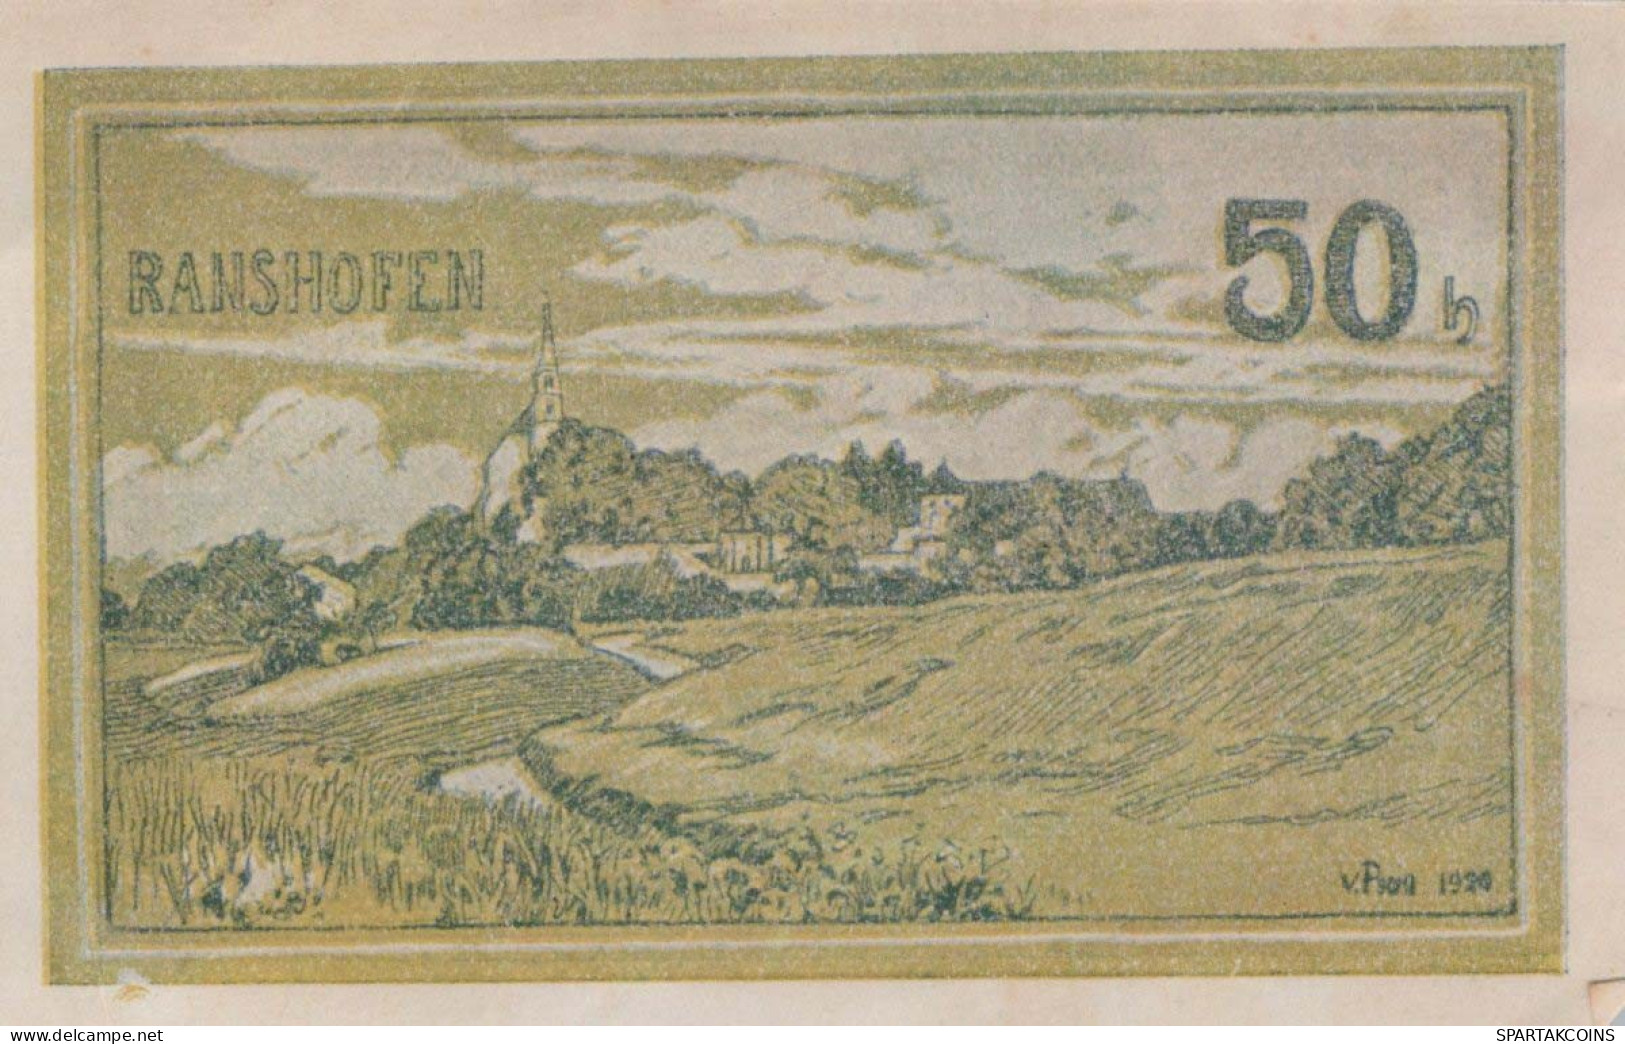 50 HELLER 1920 Stadt RANSHOFEN Oberösterreich Österreich Notgeld Banknote #PE524 - Lokale Ausgaben